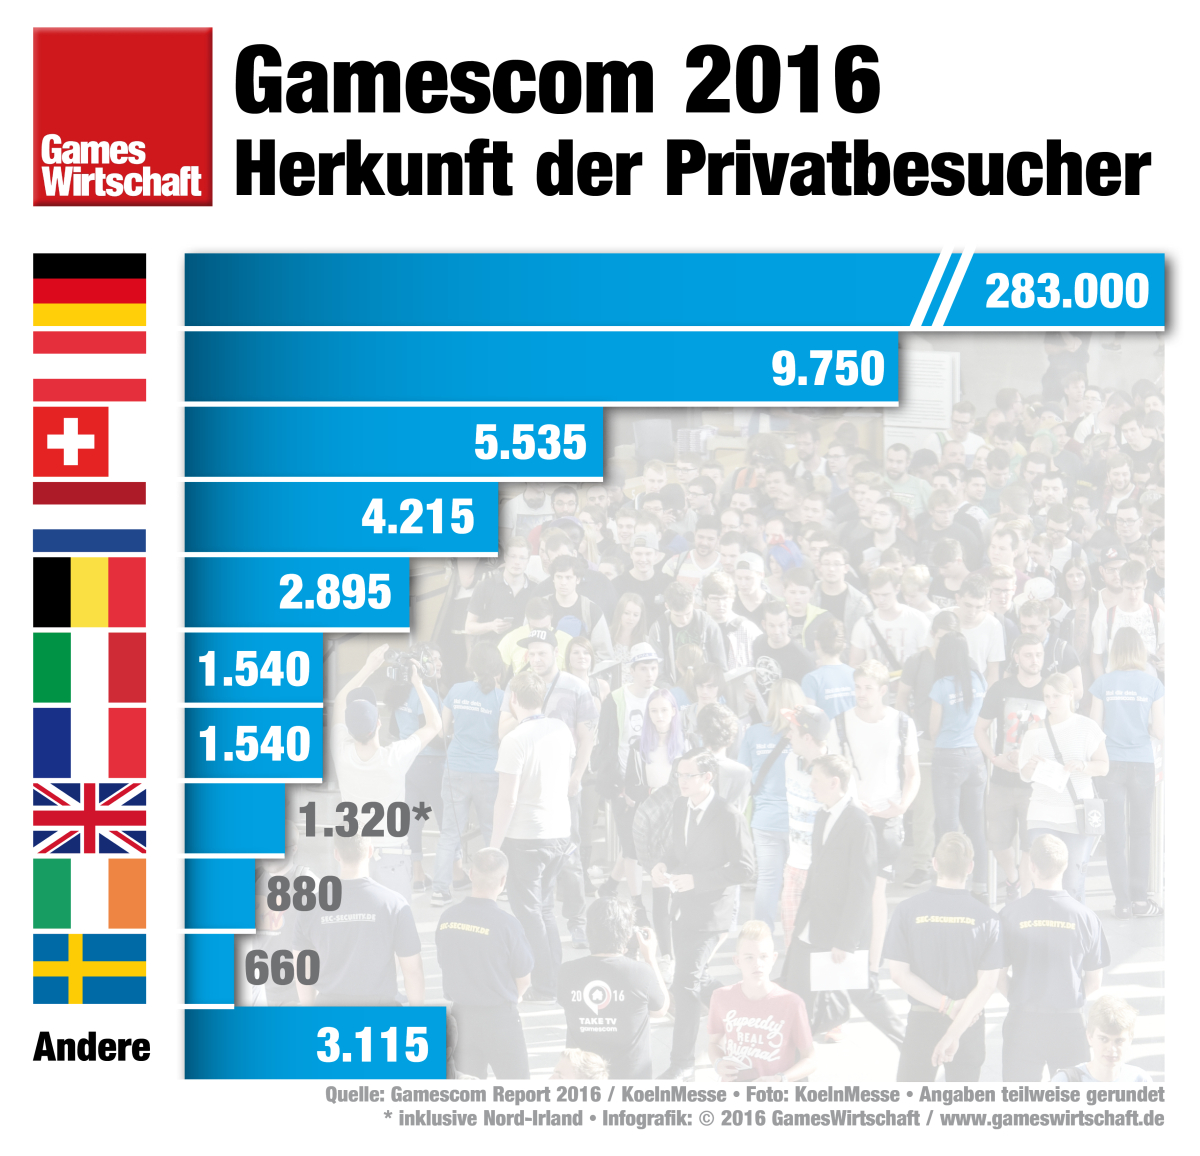 Nur eine Minderheit der Gamescom-Besucher kommt aus Köln und Umgebung - die meisten haben einen Anreiseweg jenseits der 300 Kilometer vor sich.